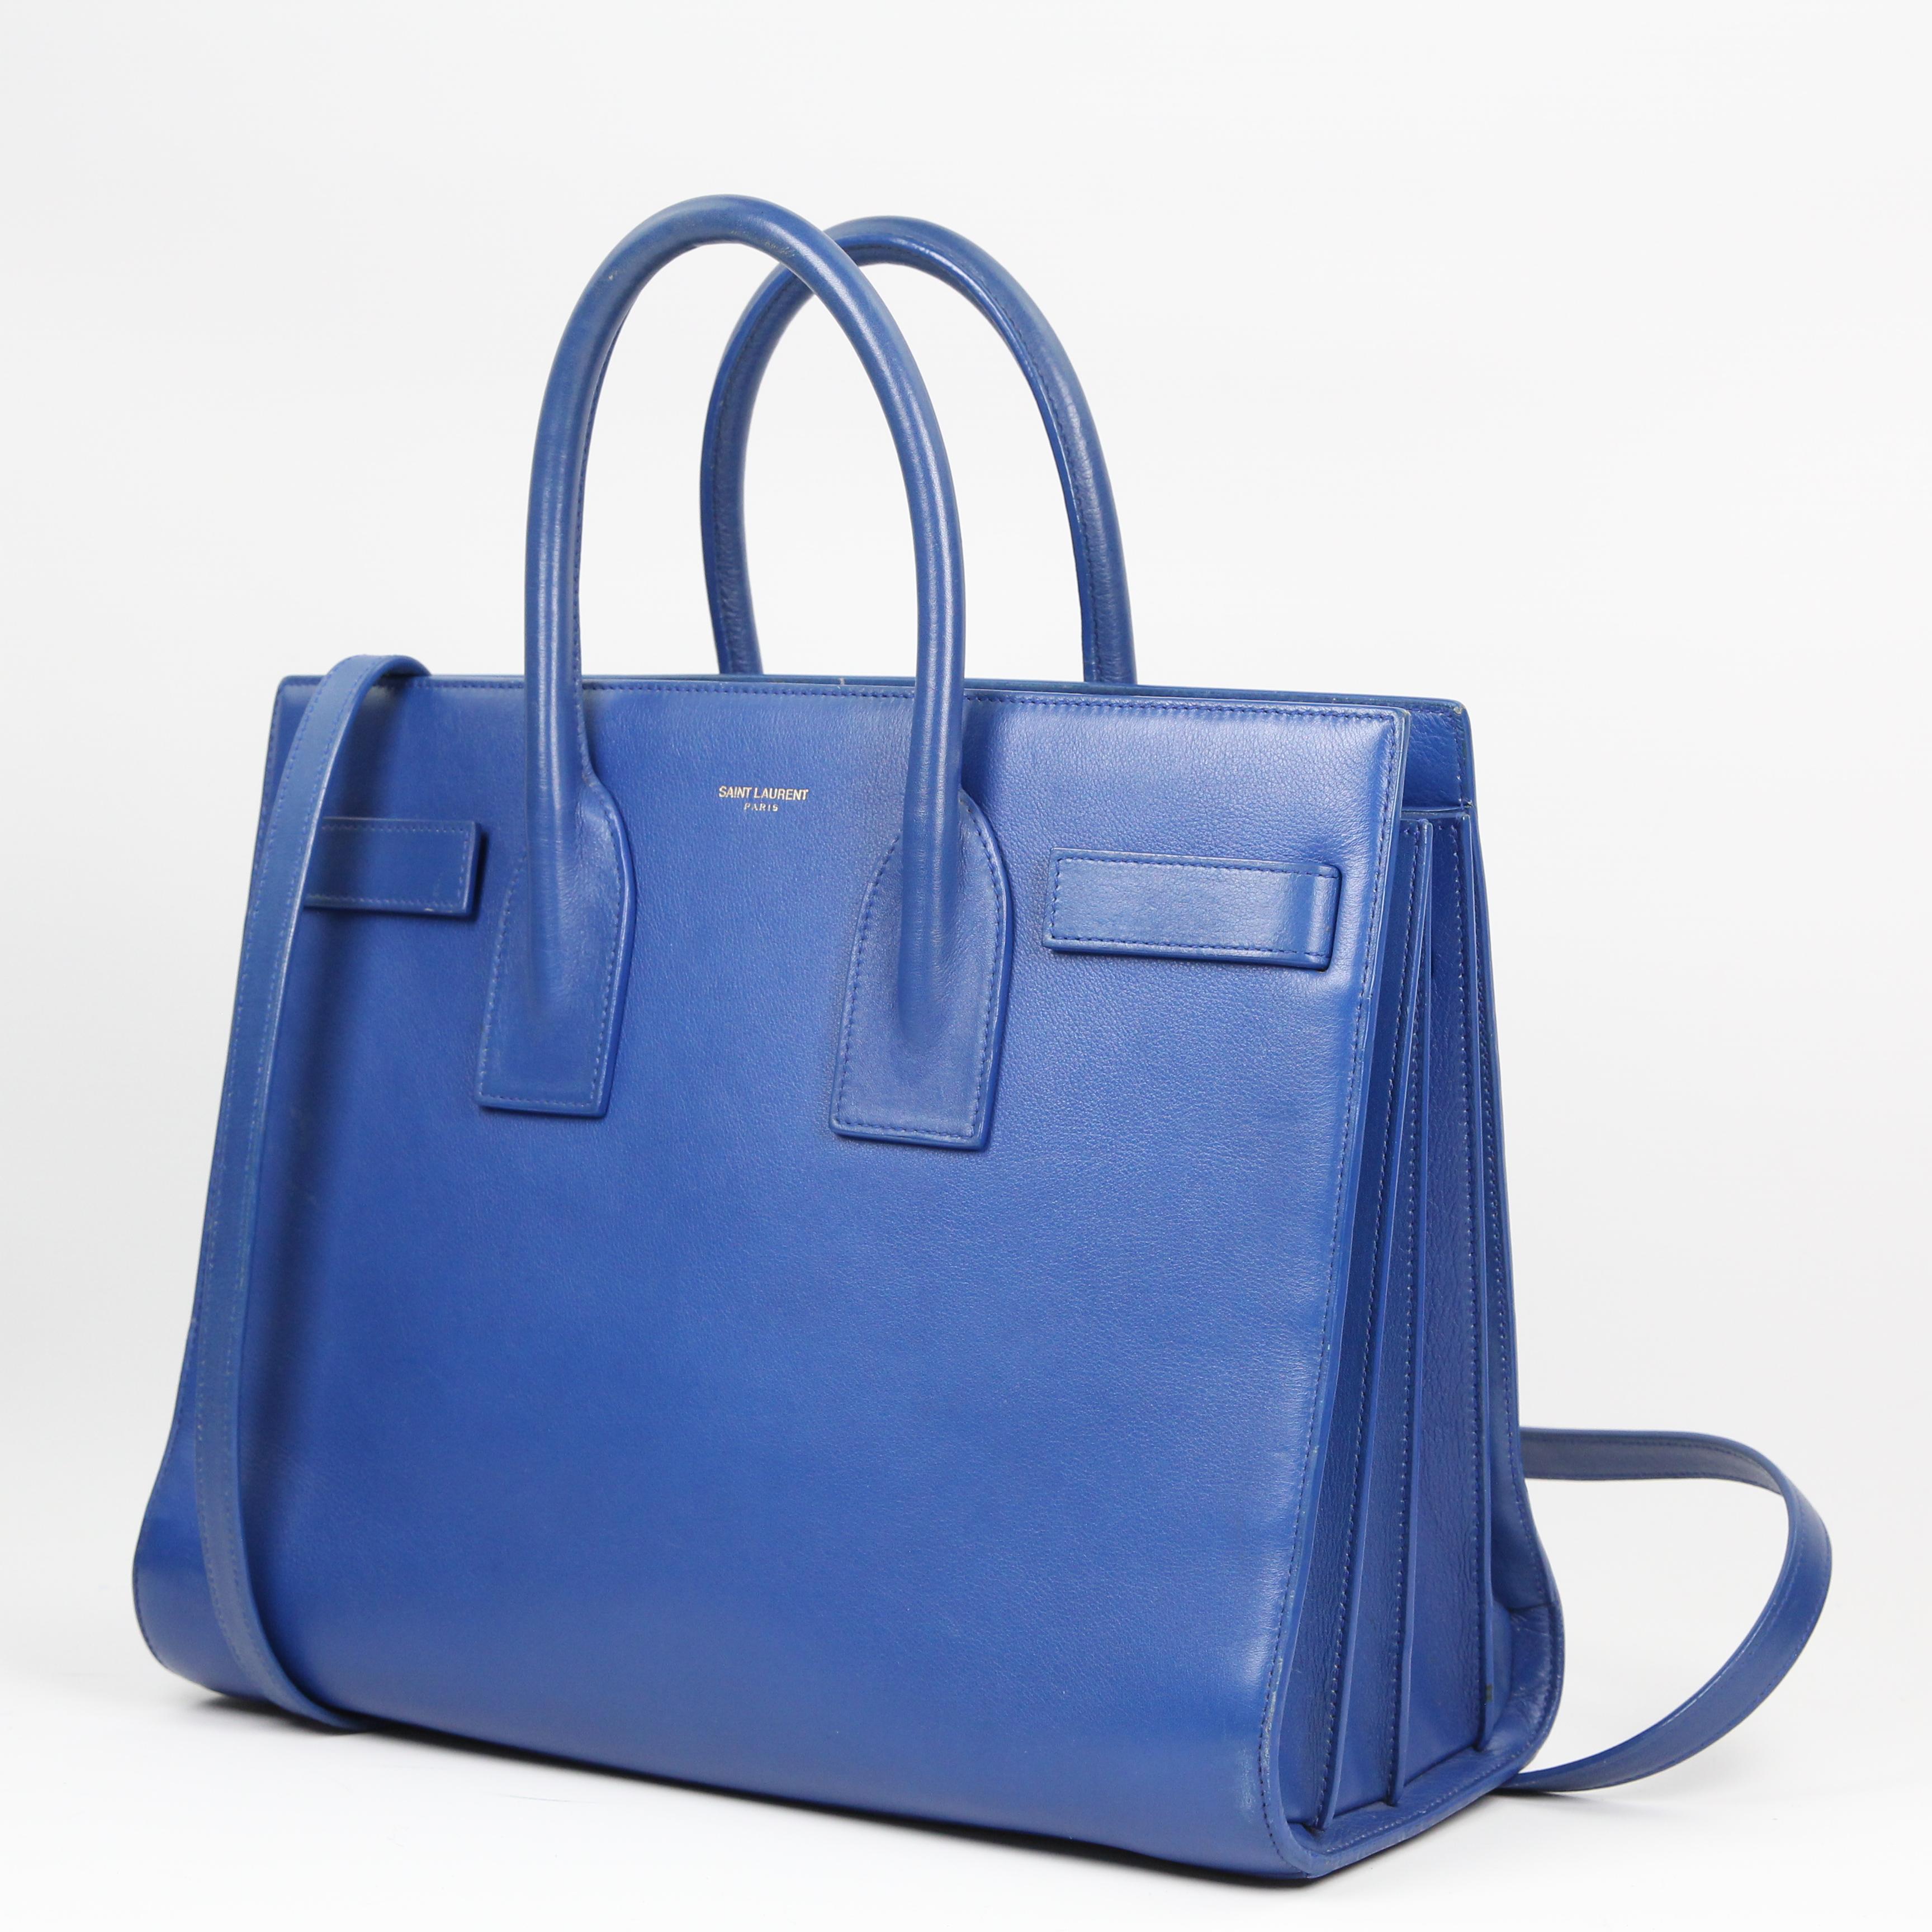 Saint Laurent Sac de Jour leather handbag For Sale 4